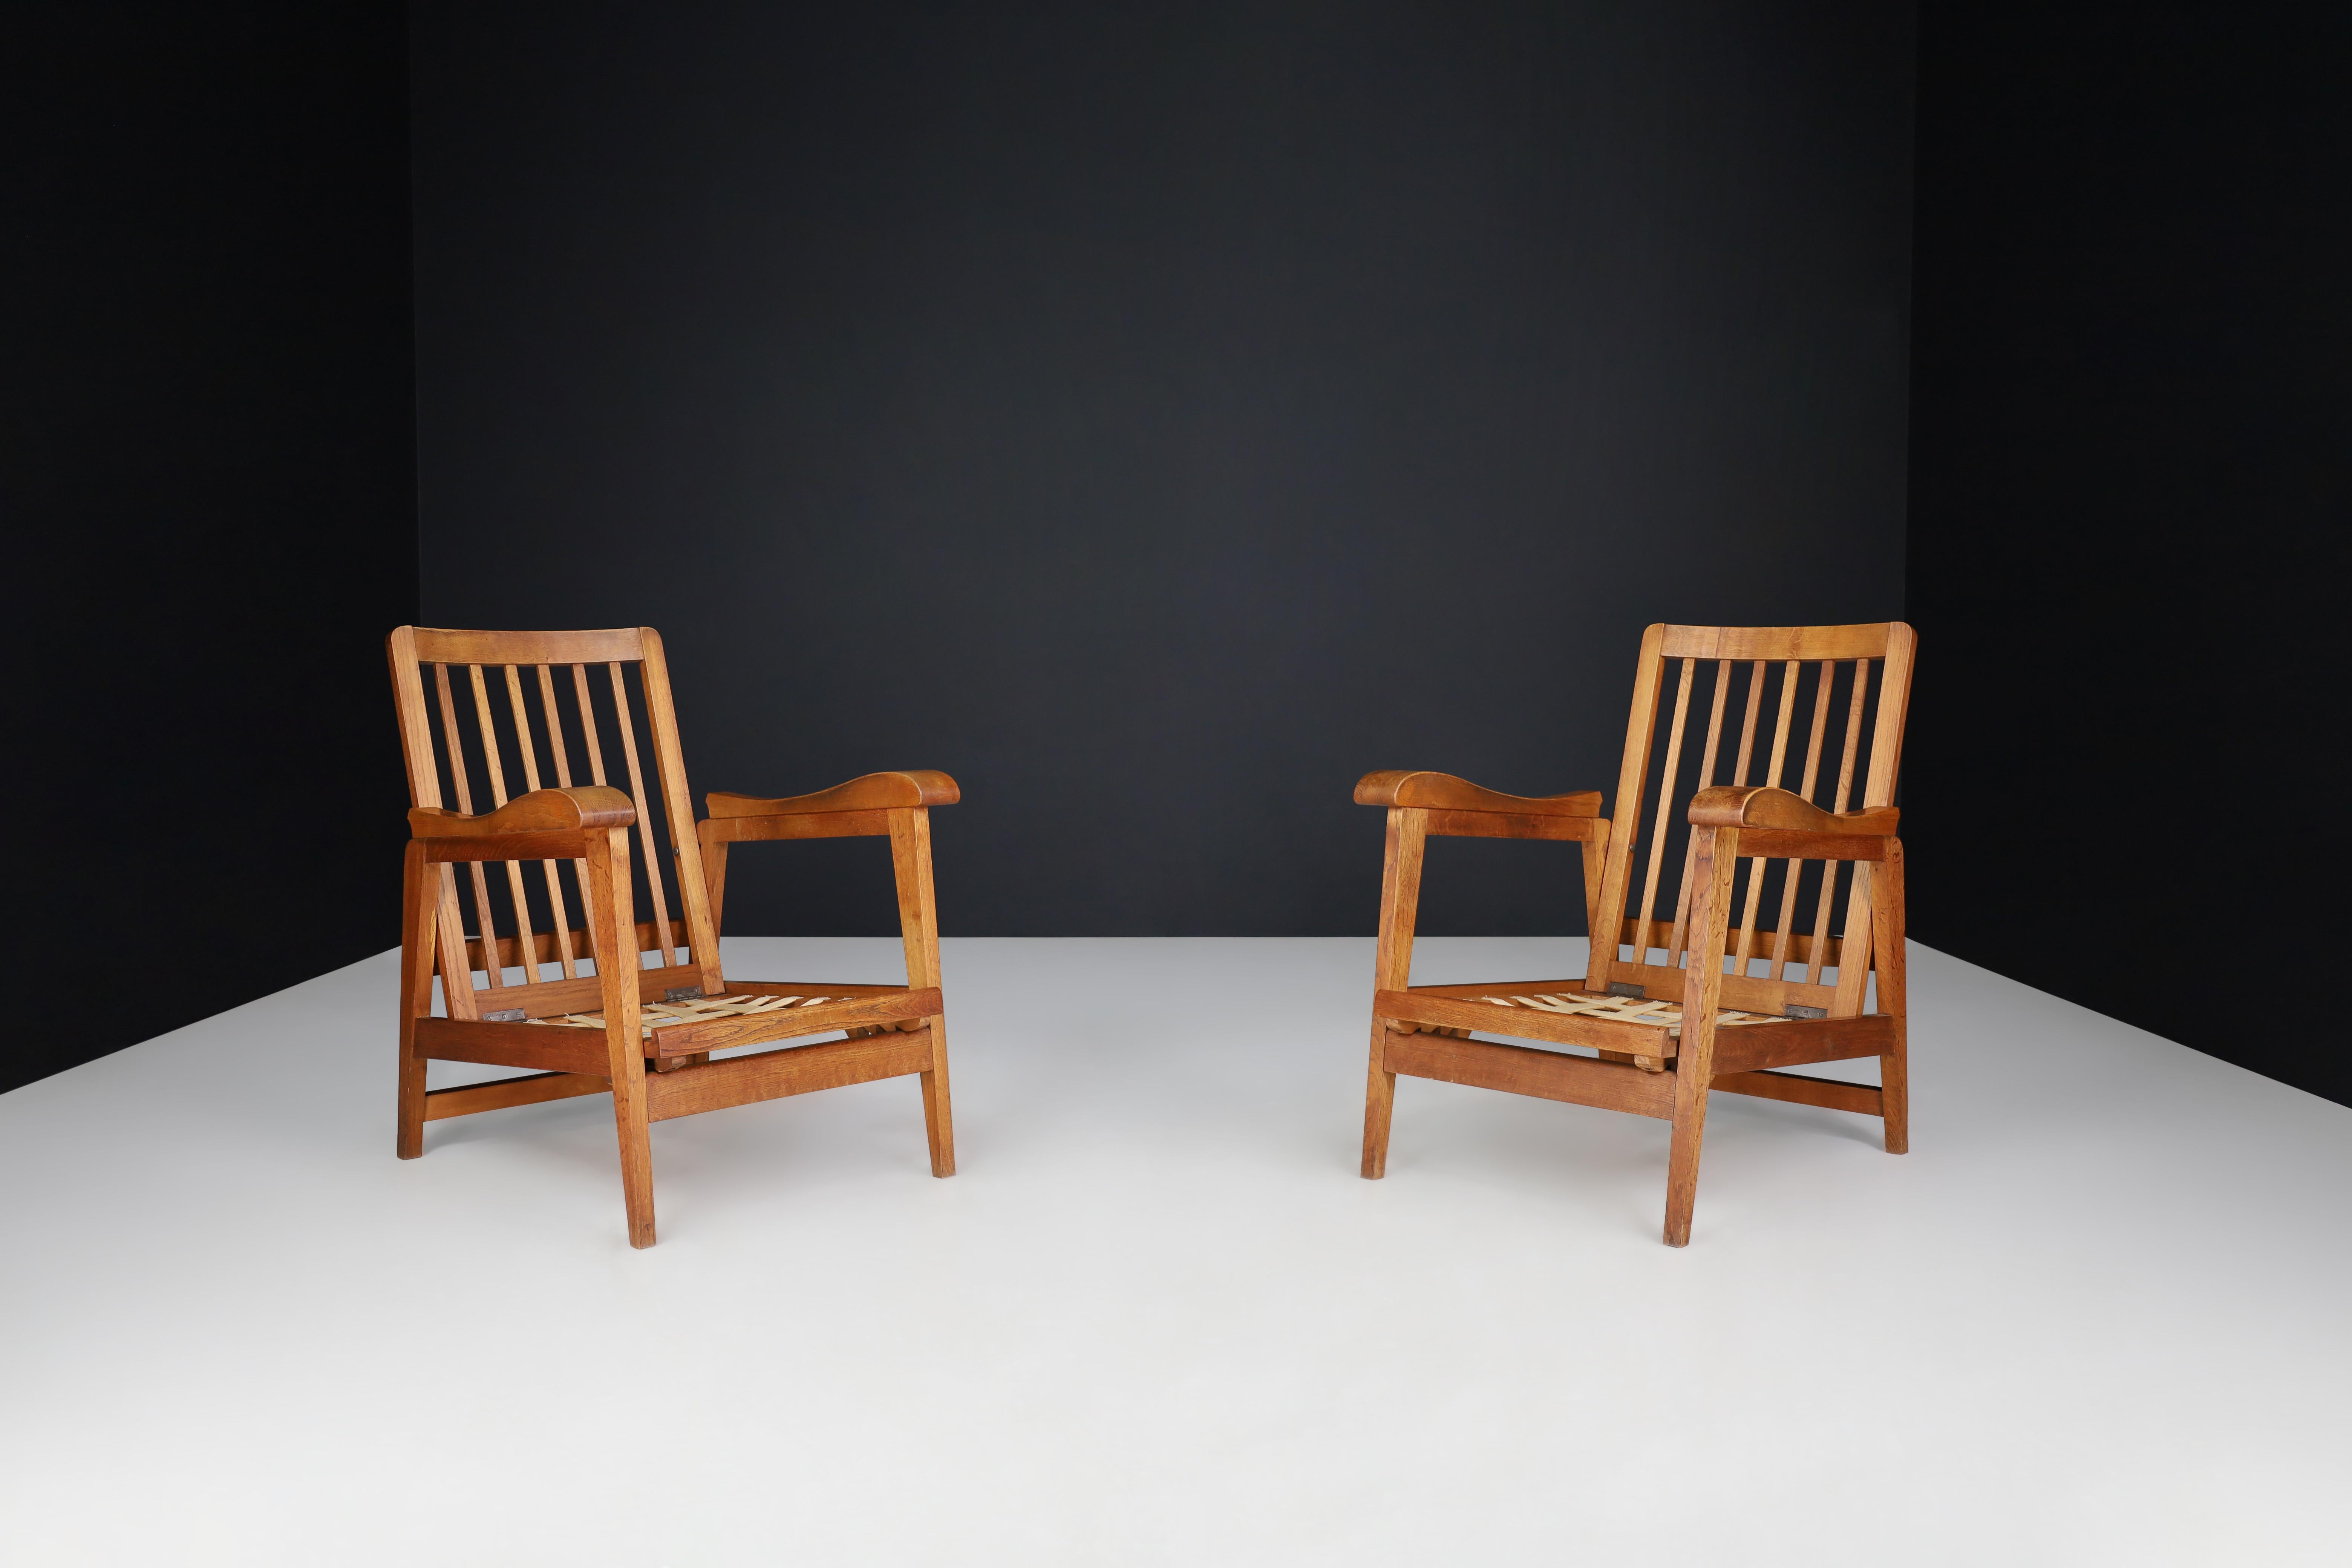 Chaises longues réglables en Oak Oak, set de 2 , France, 1950s

Voici la description d'une paire de deux fauteuils réglables sculpturaux originaux du milieu du siècle dernier qui ont été fabriqués et conçus en France dans les années 1950. Ces